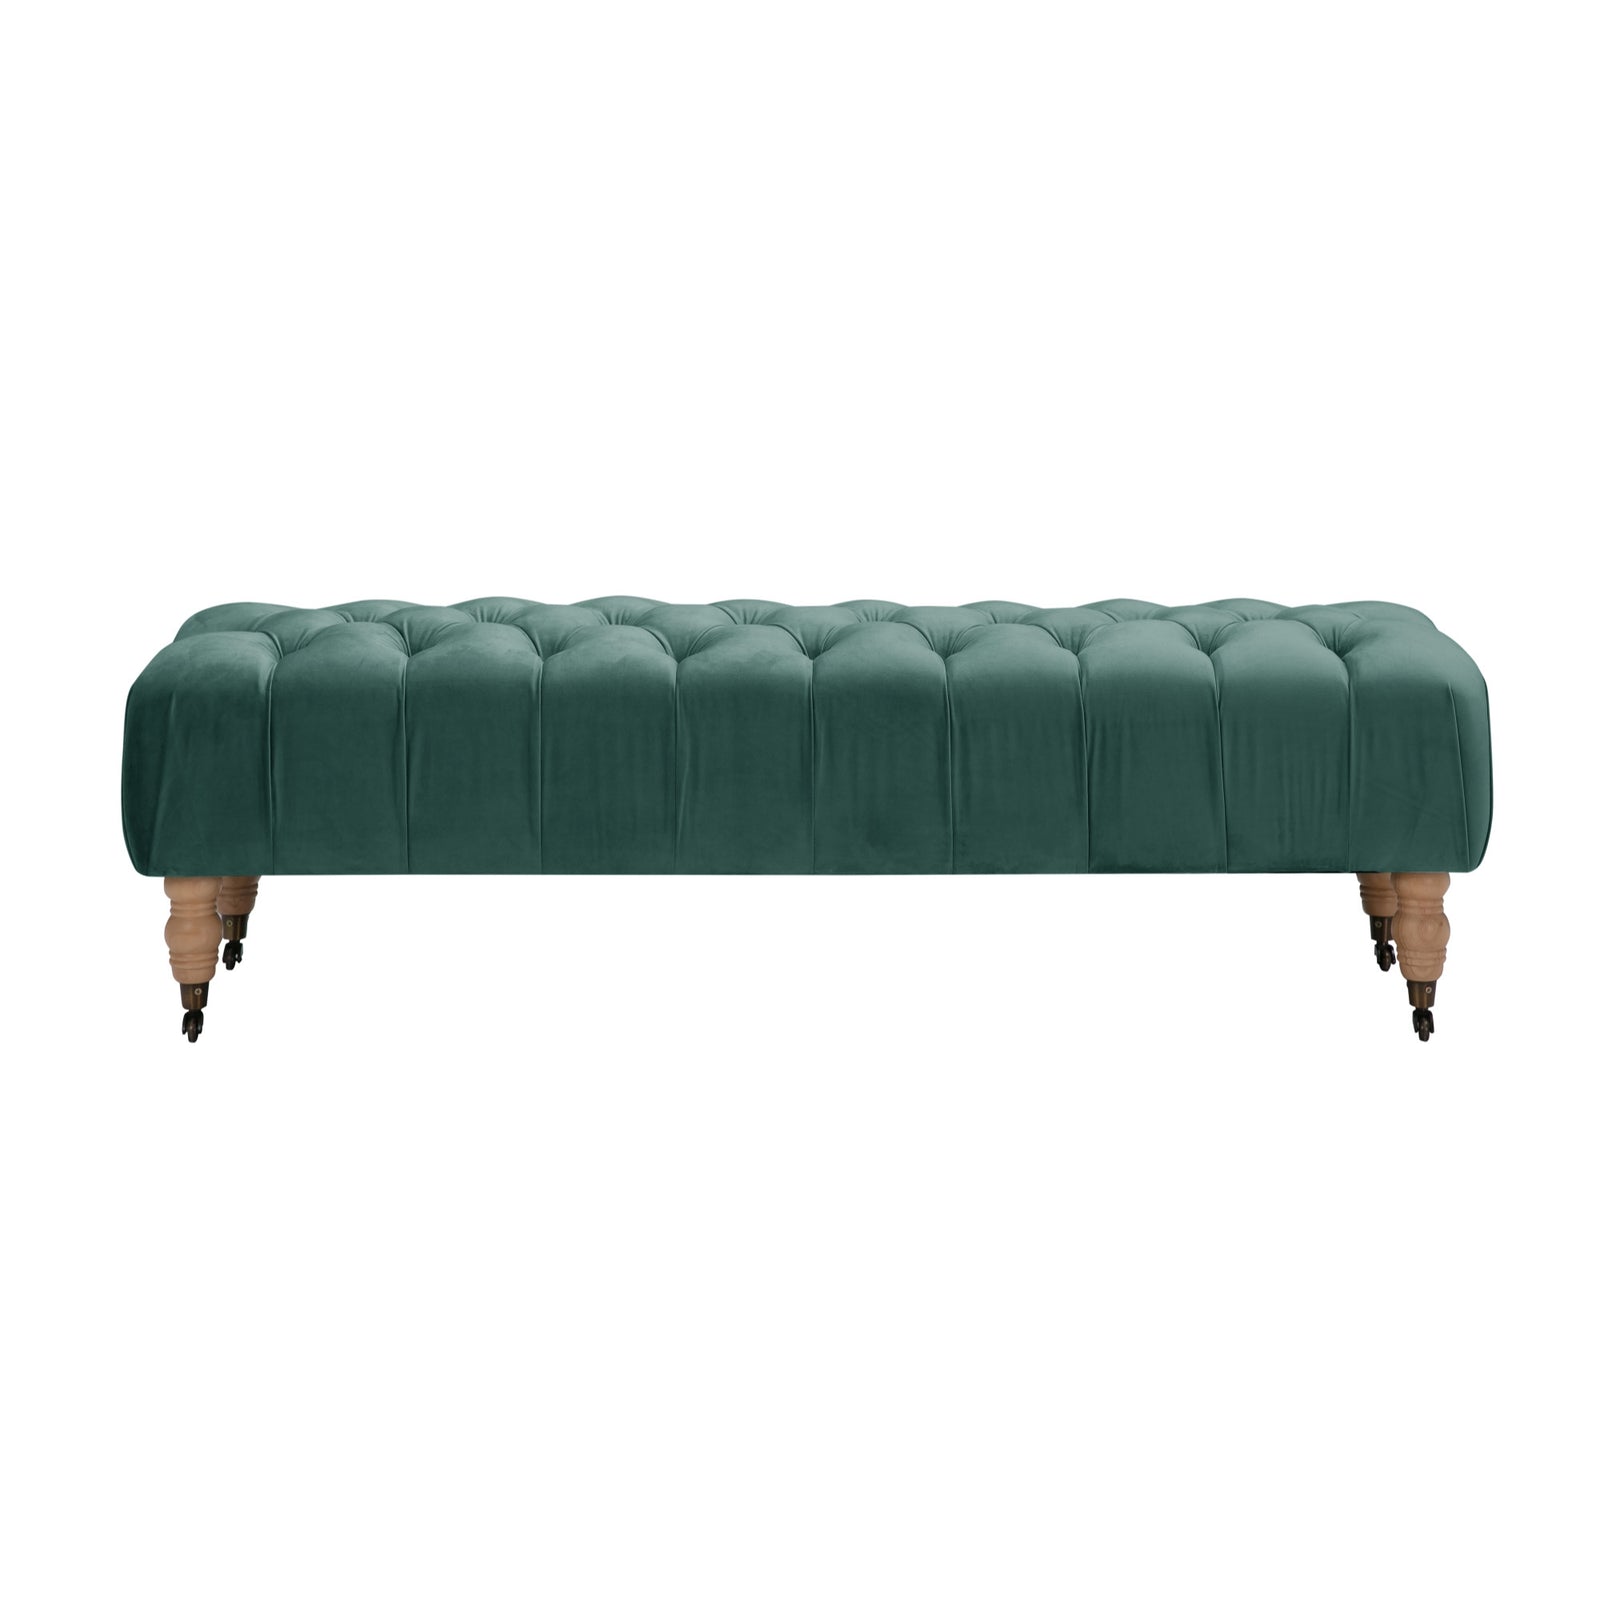 60" Hunter Green And Brown Upholstered Velvet Bench